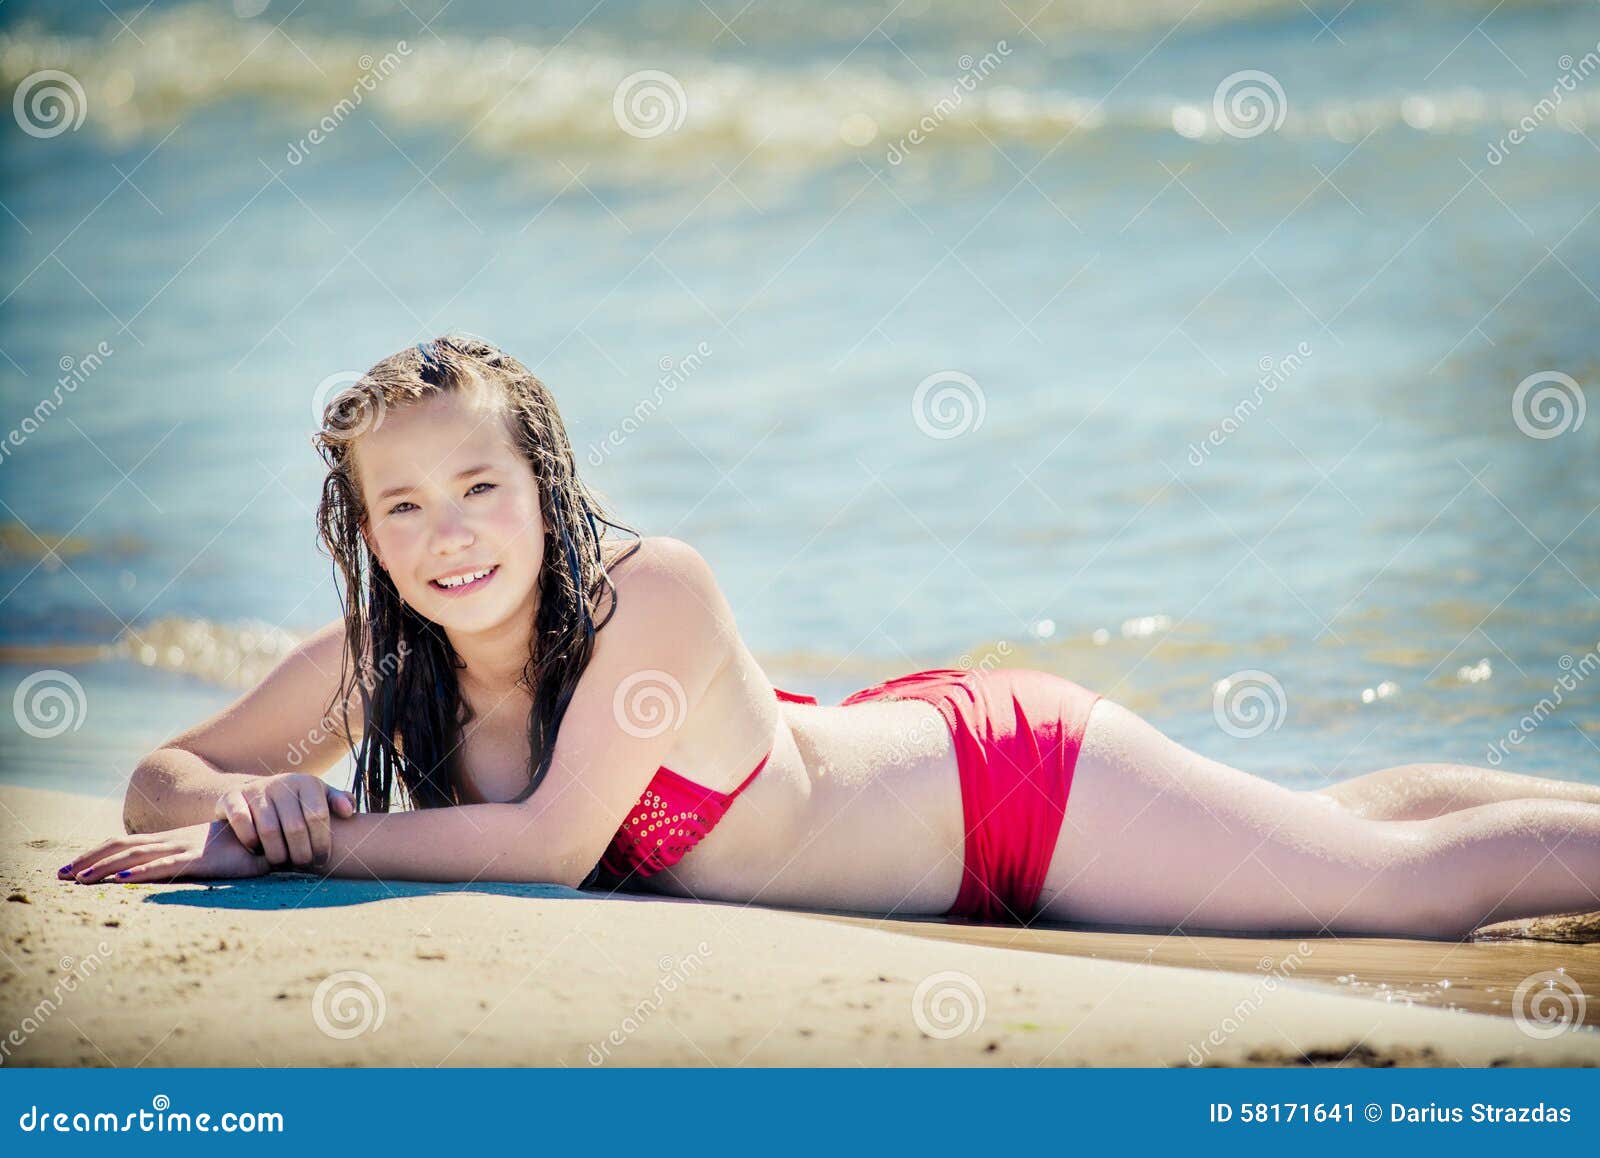 Teen bikini girl stock image. Image of smile, summer - 58171641